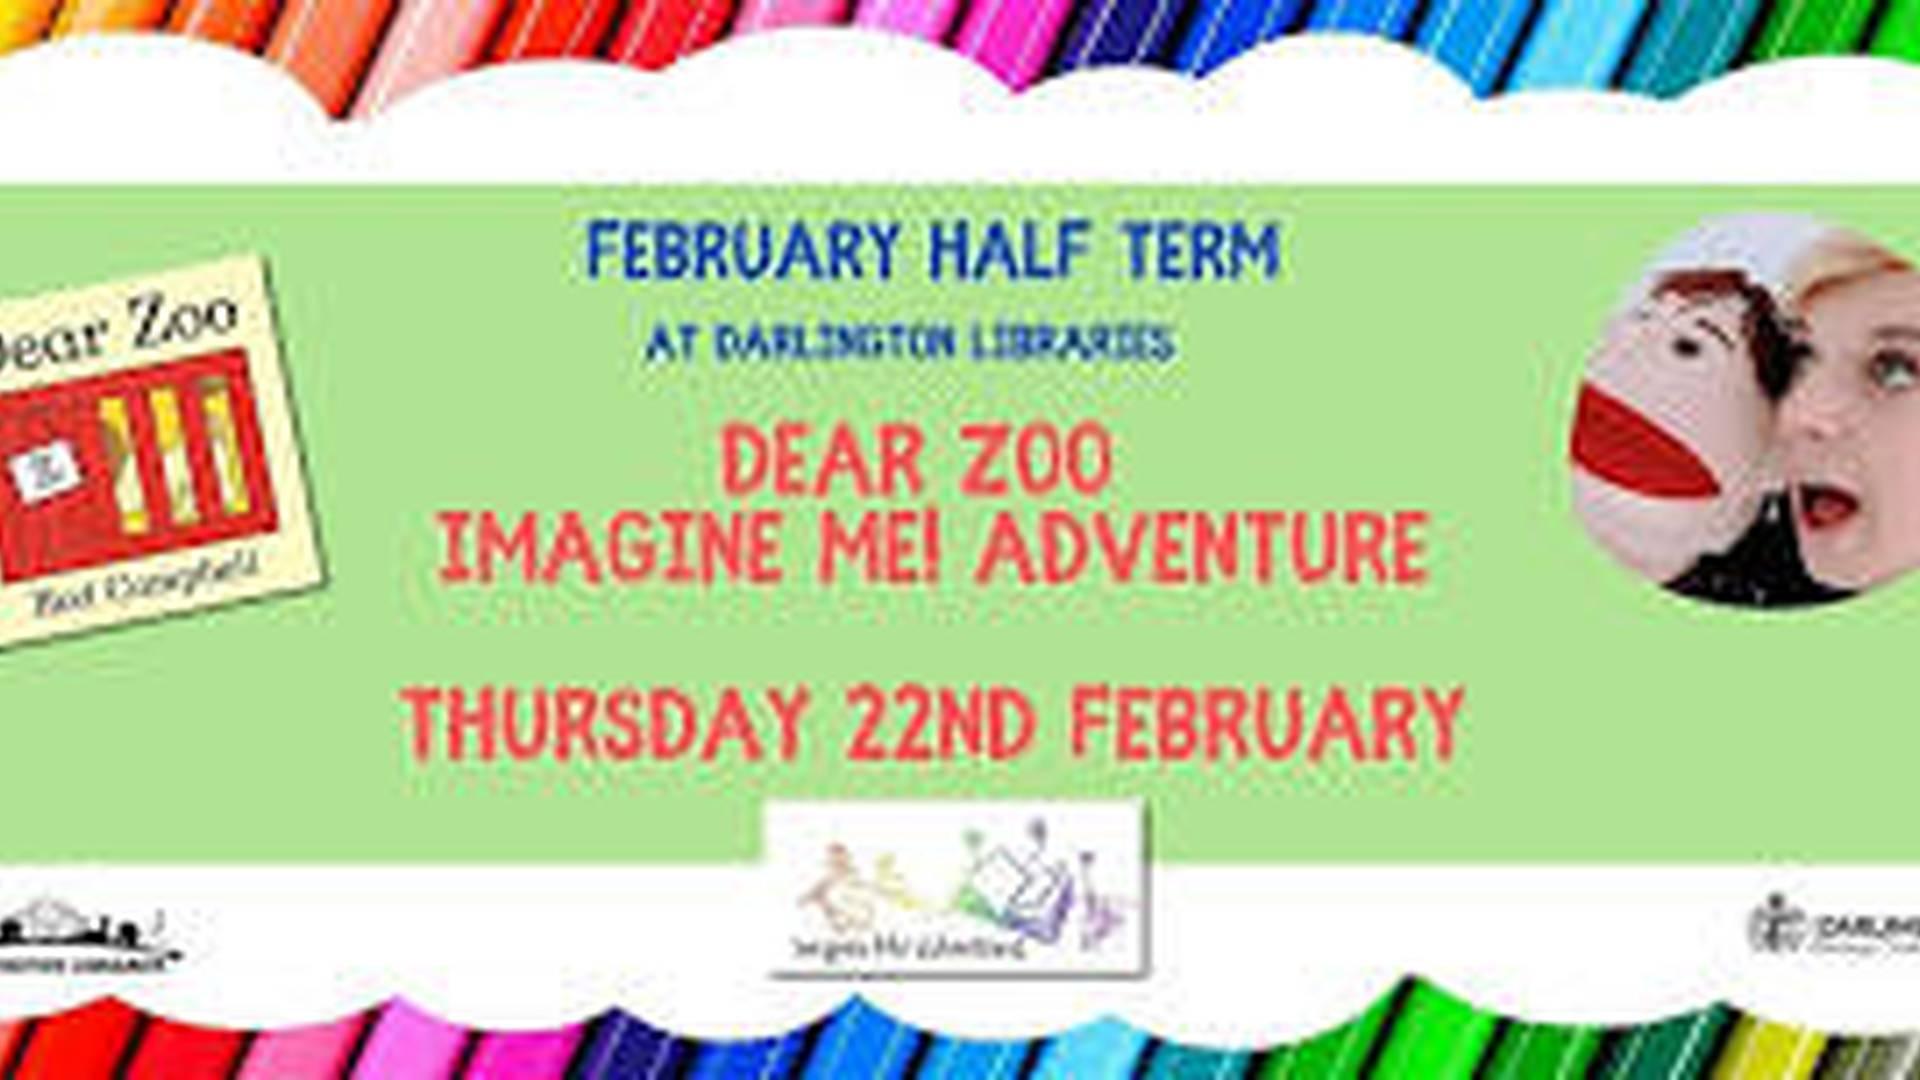 Darlington Libraries: Dear Zoo Adventure - Thu 22nd Feb-1pm @Darlington photo